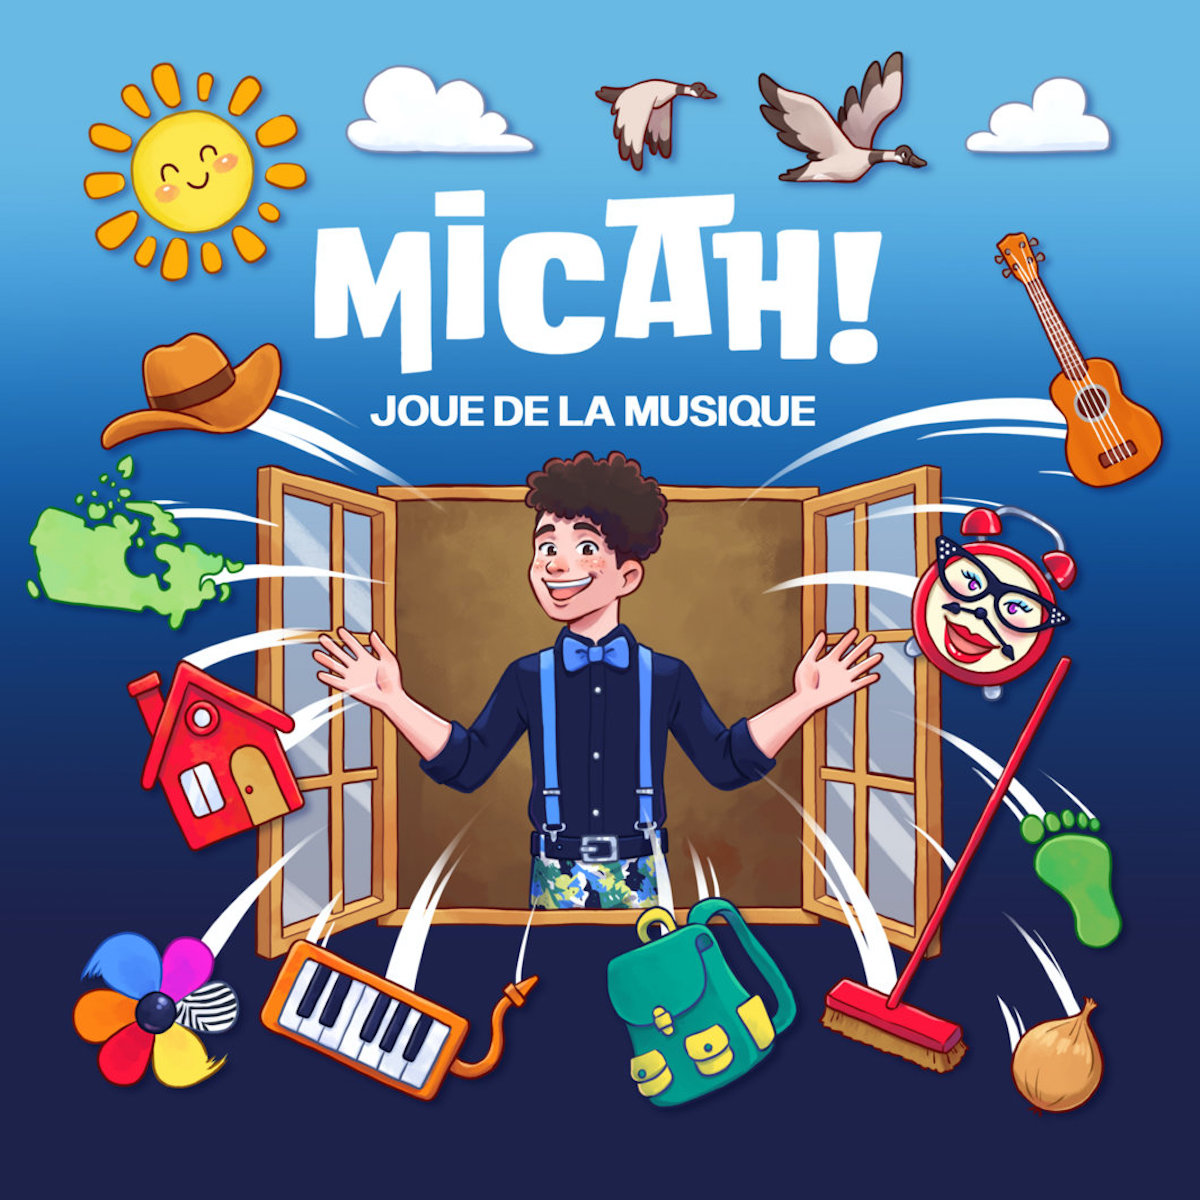 Micah! – Micah joue de la musique